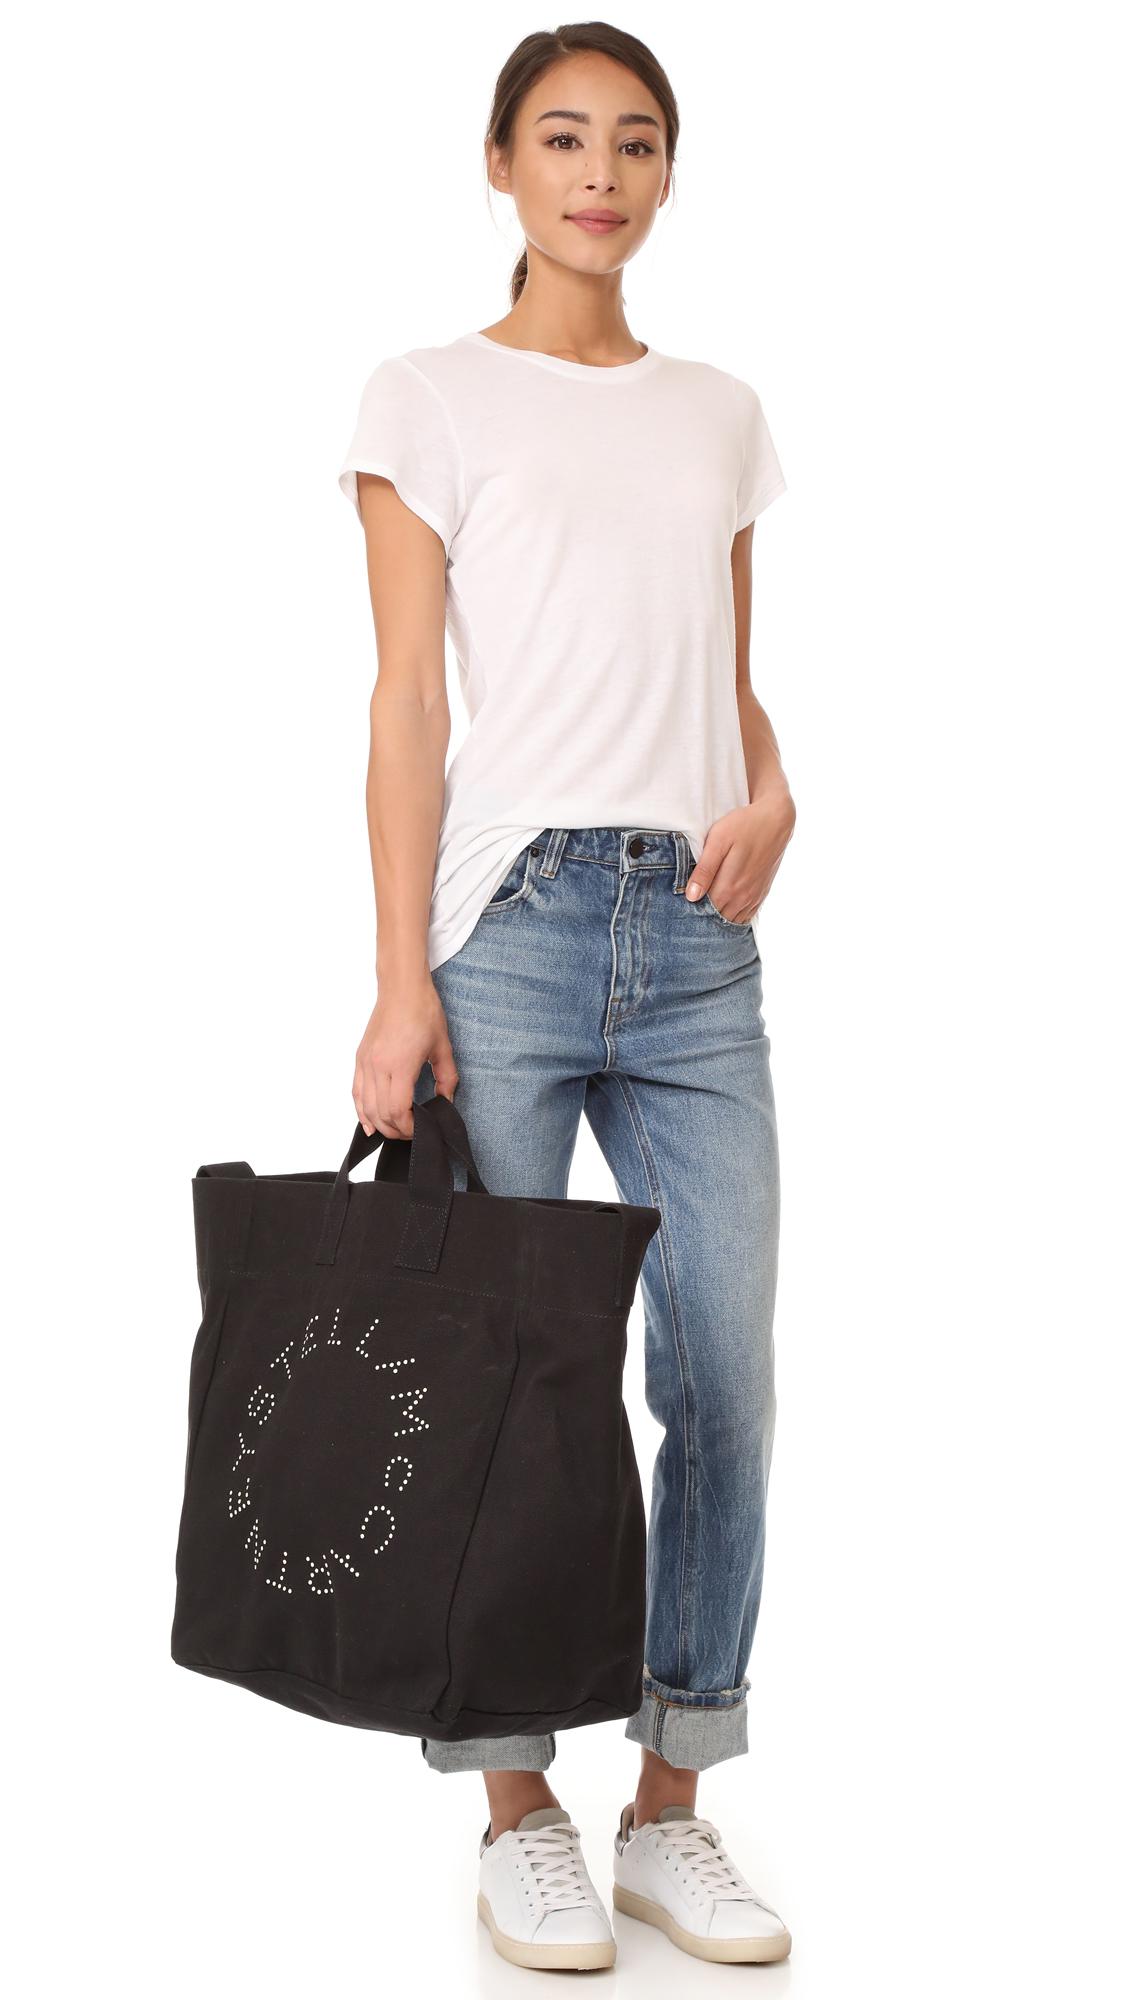 Stella McCartney Canvas Circle Logo Beach Bag in Black - Lyst